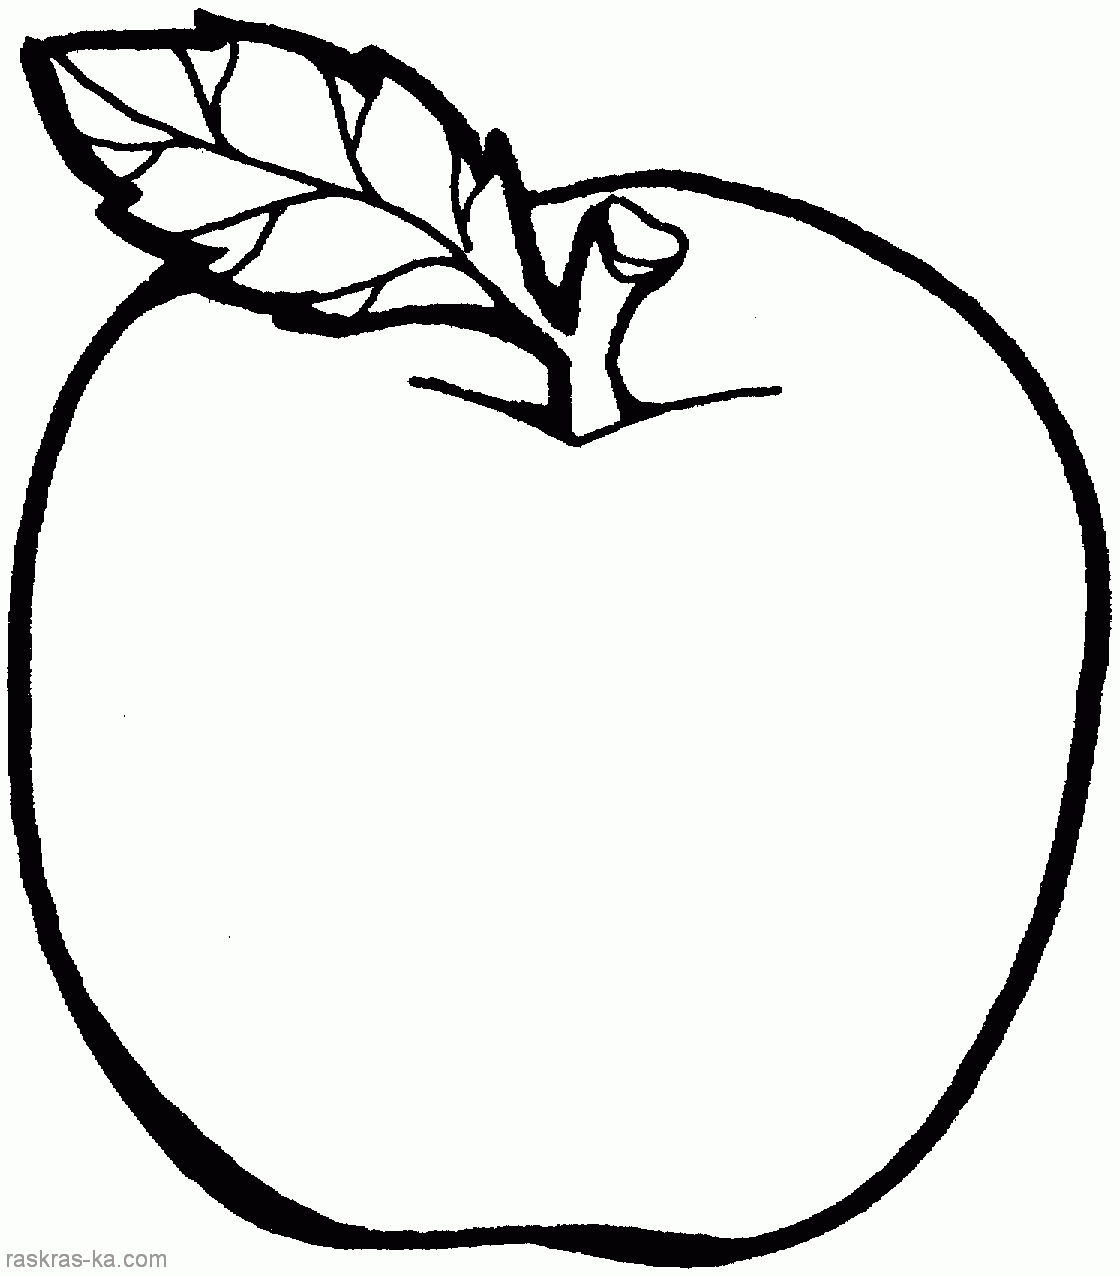 Раскраски Яблоки - изображения яблок, готовые к раскрашиванию (яблоки)